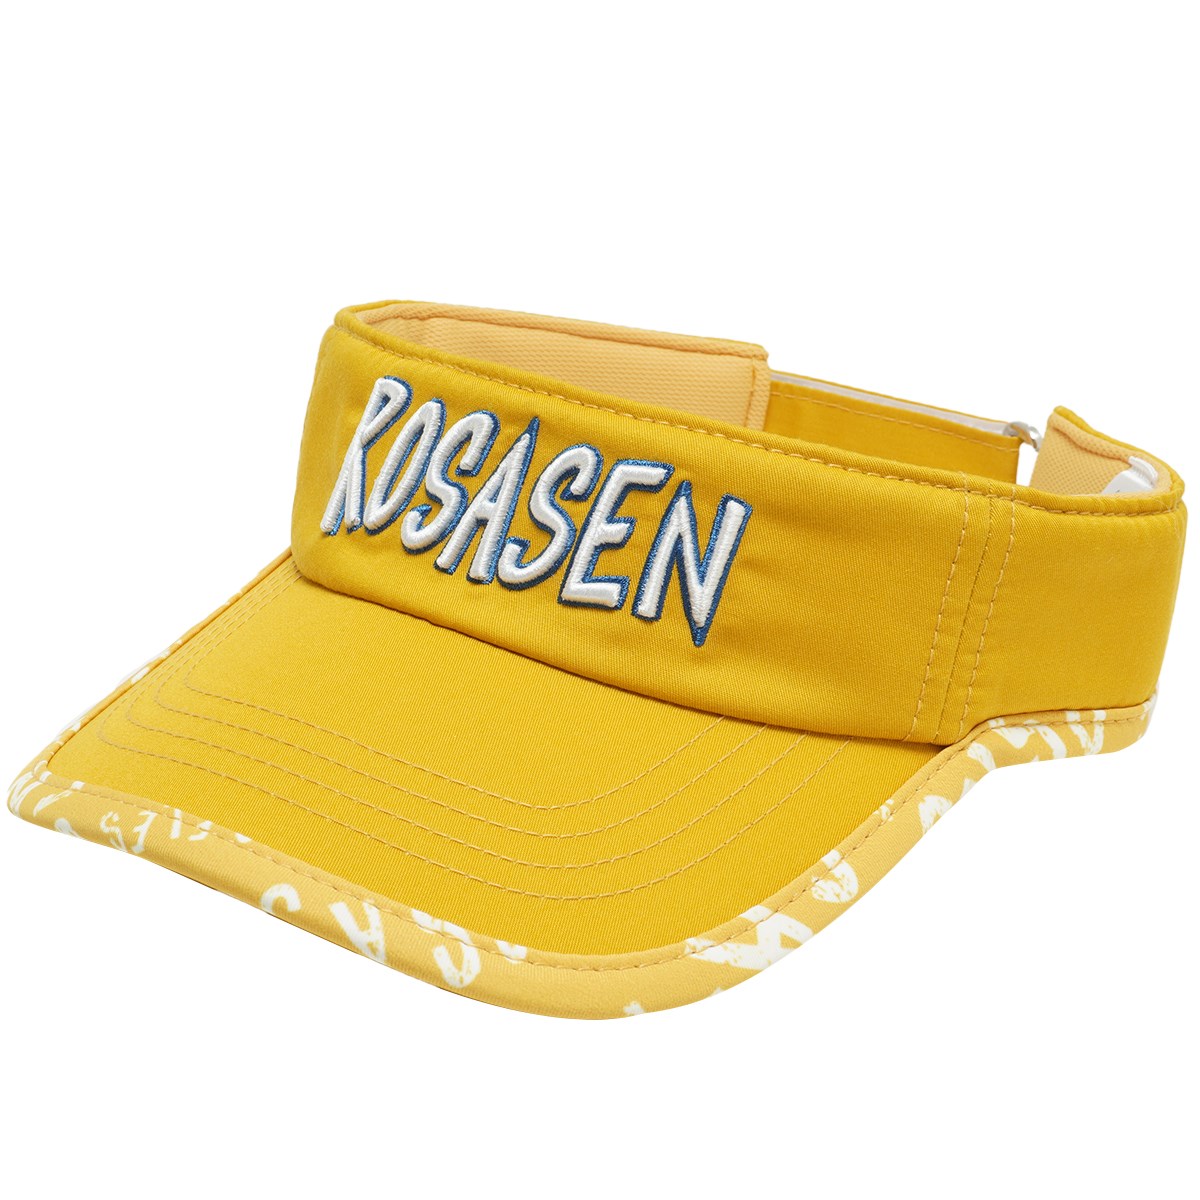 [2022年モデル] ロサーセン ROSASEN ルーズマンコラボサンバイザー イエロー 033 レディース ゴルフウェア 帽子